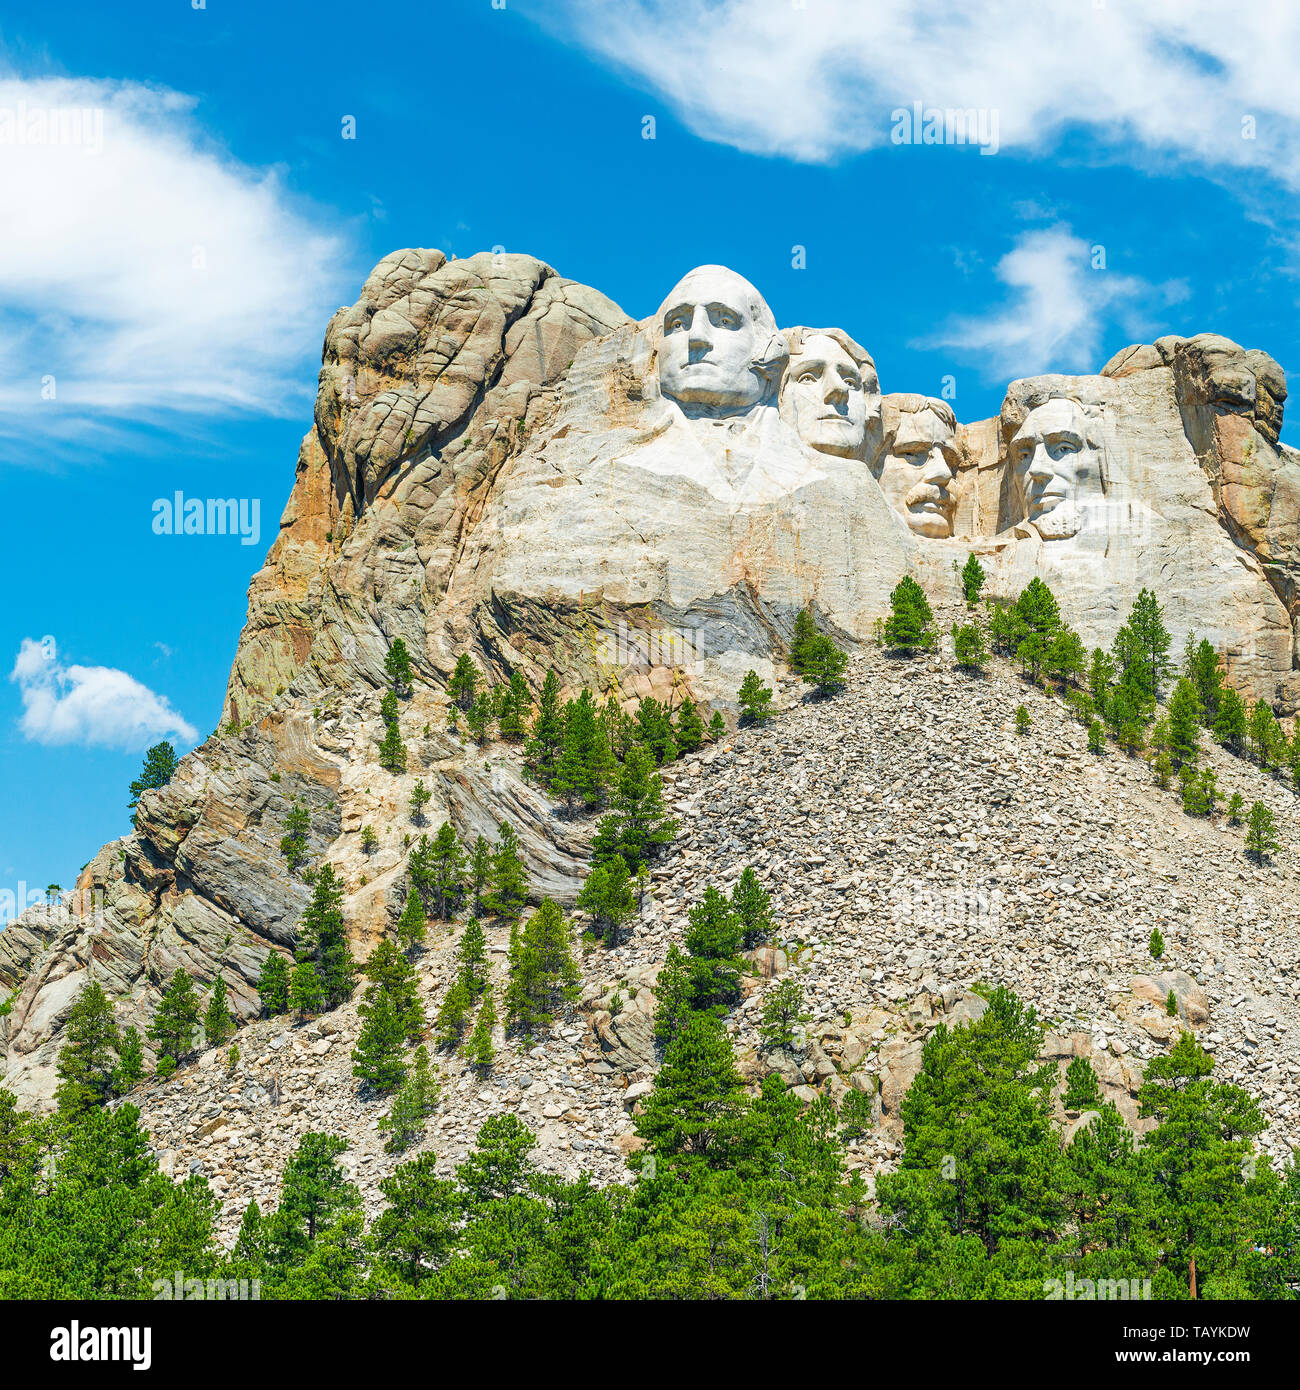 Mount Rushmore National Monument mit einem Pinienwald in den Black Hills in der Nähe von Rapid City in South Dakota, Vereinigte Staaten von Amerika, USA. Stockfoto